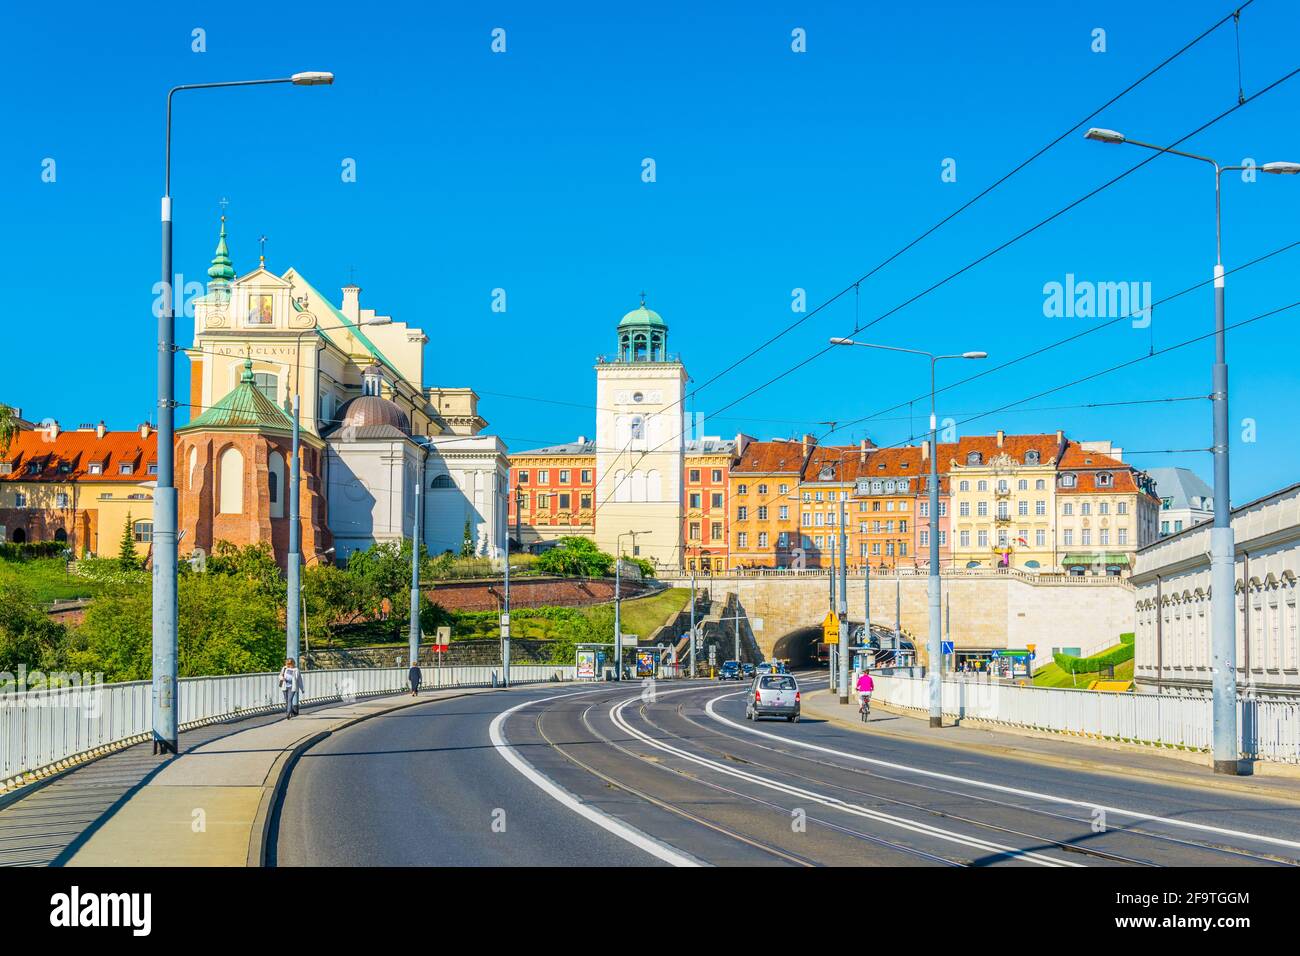 Vue sur l'église saint anna et son clocher distinctif depuis une route qui mène sous le château royal de Varsovie, en Pologne. Banque D'Images